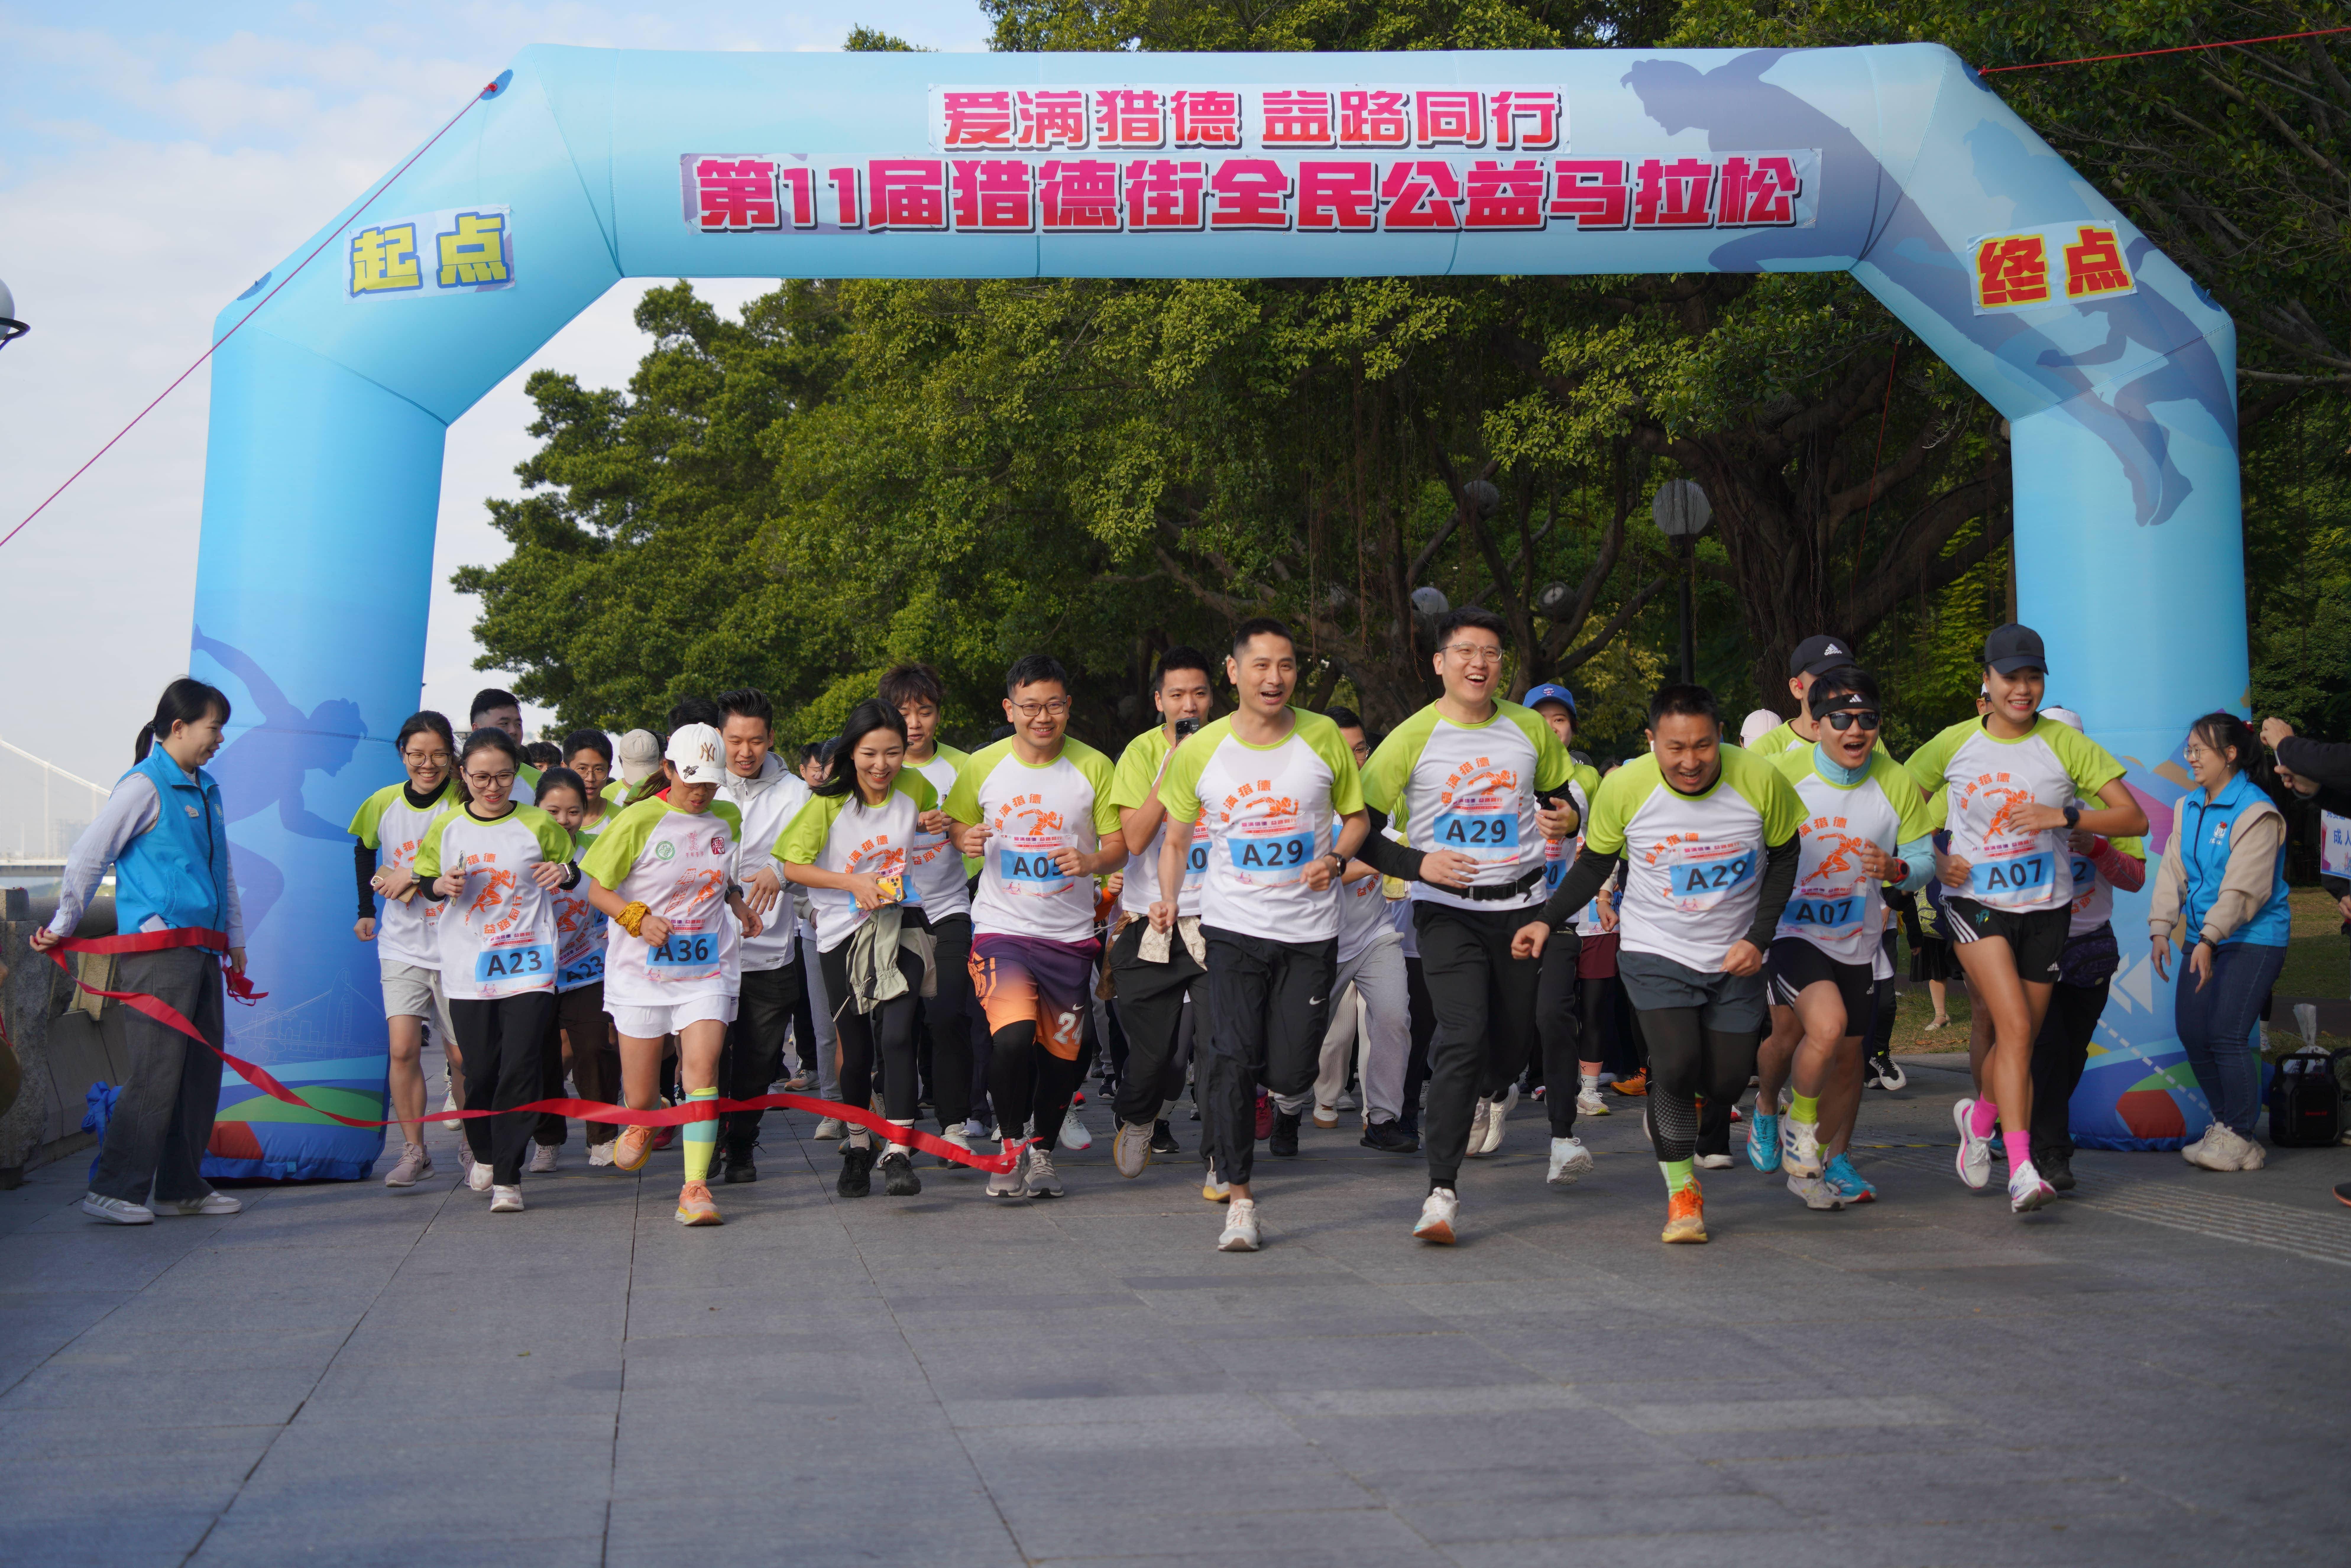 参与人数创新高，广州天河猎德街公益马拉松开跑